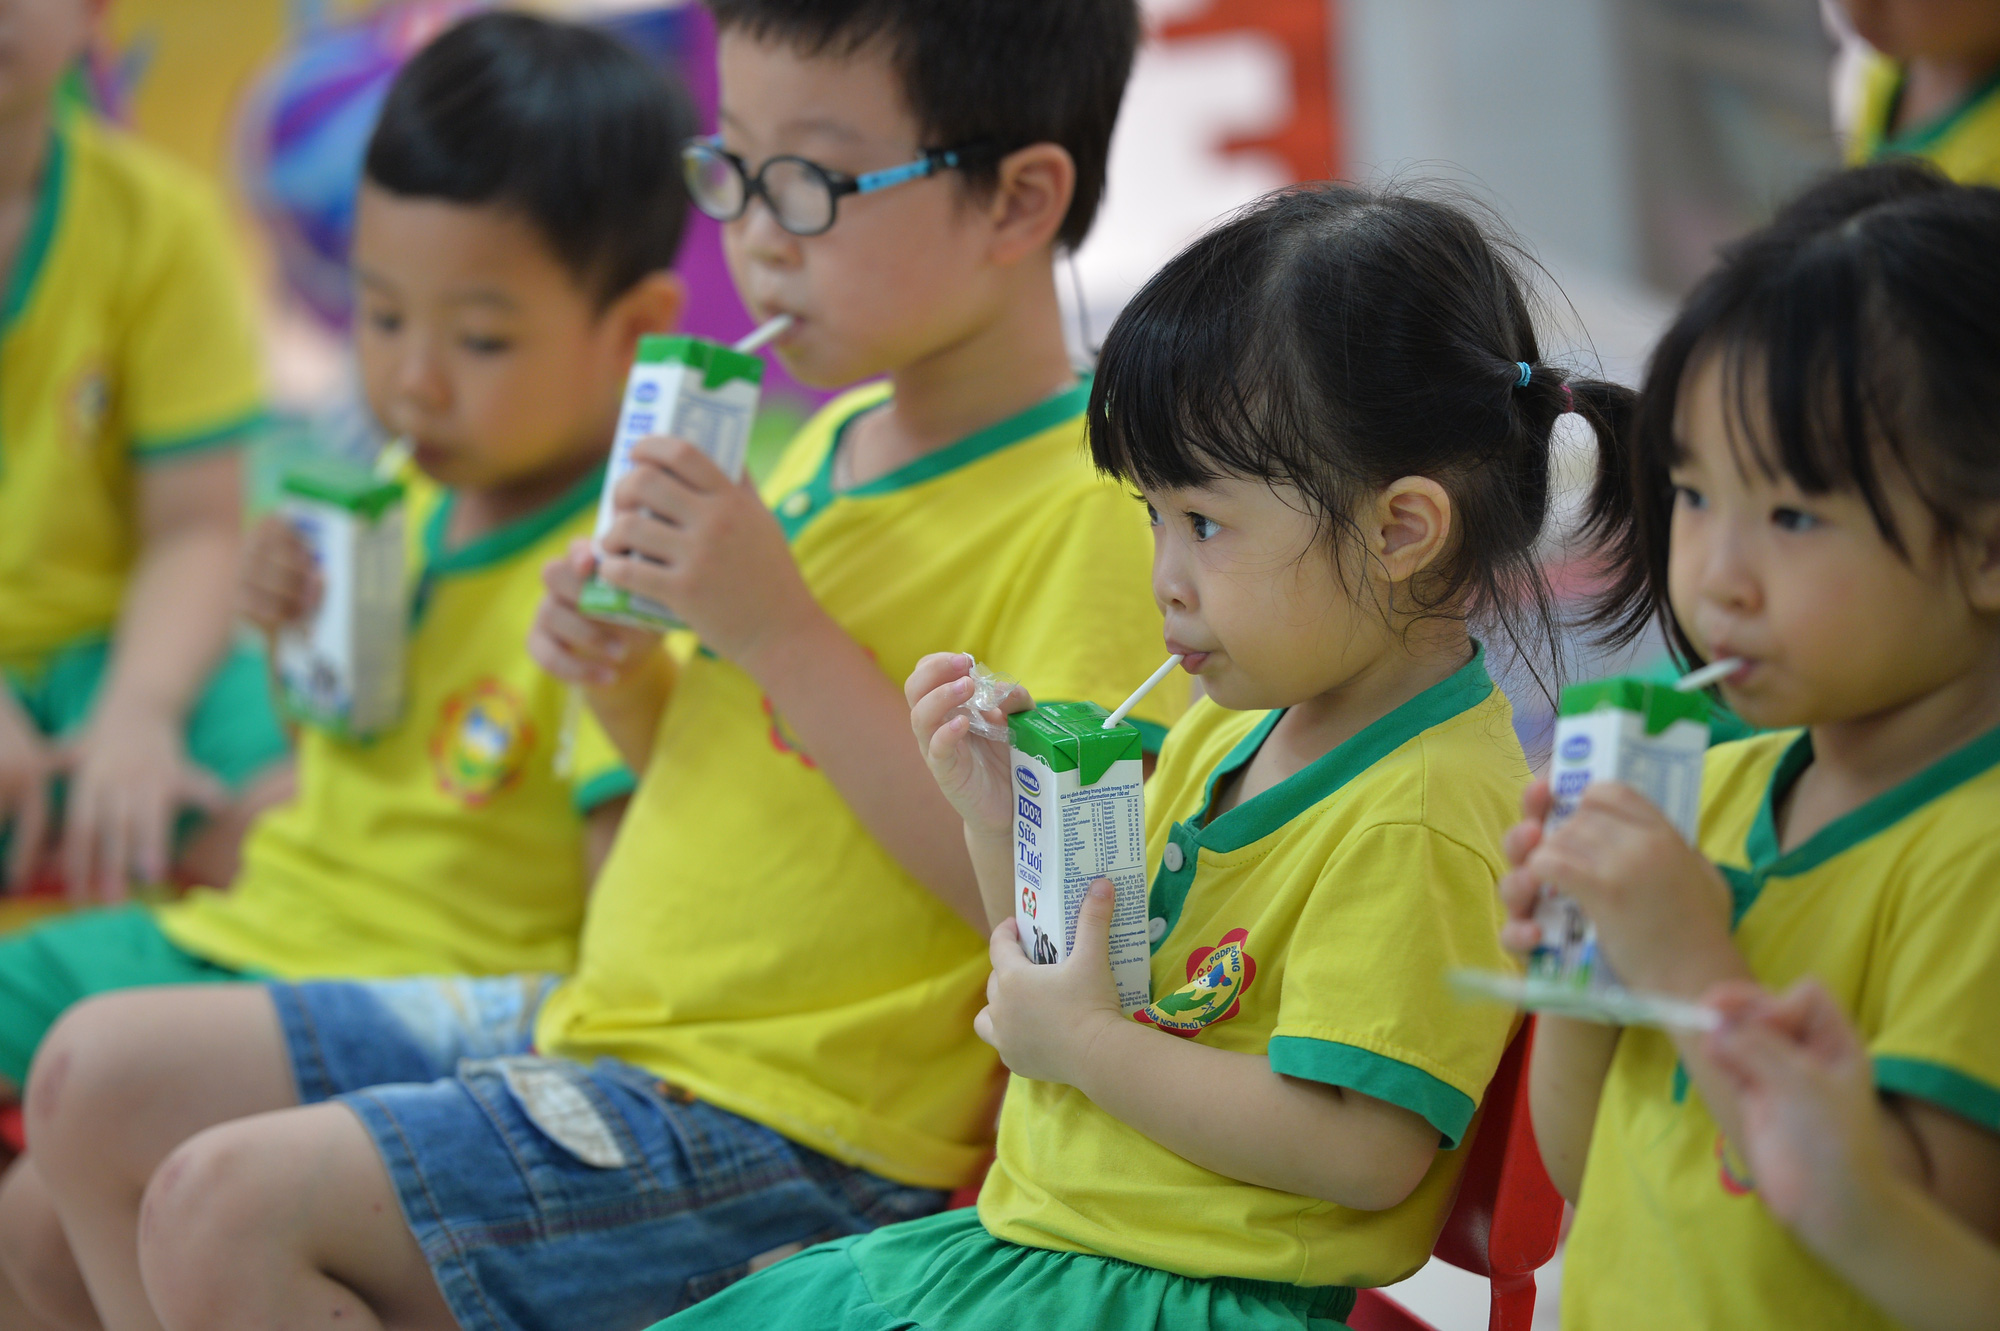 Mới có 25 tỉnh thành triển khai cho học sinh uống sữa học đường - Ảnh 1.